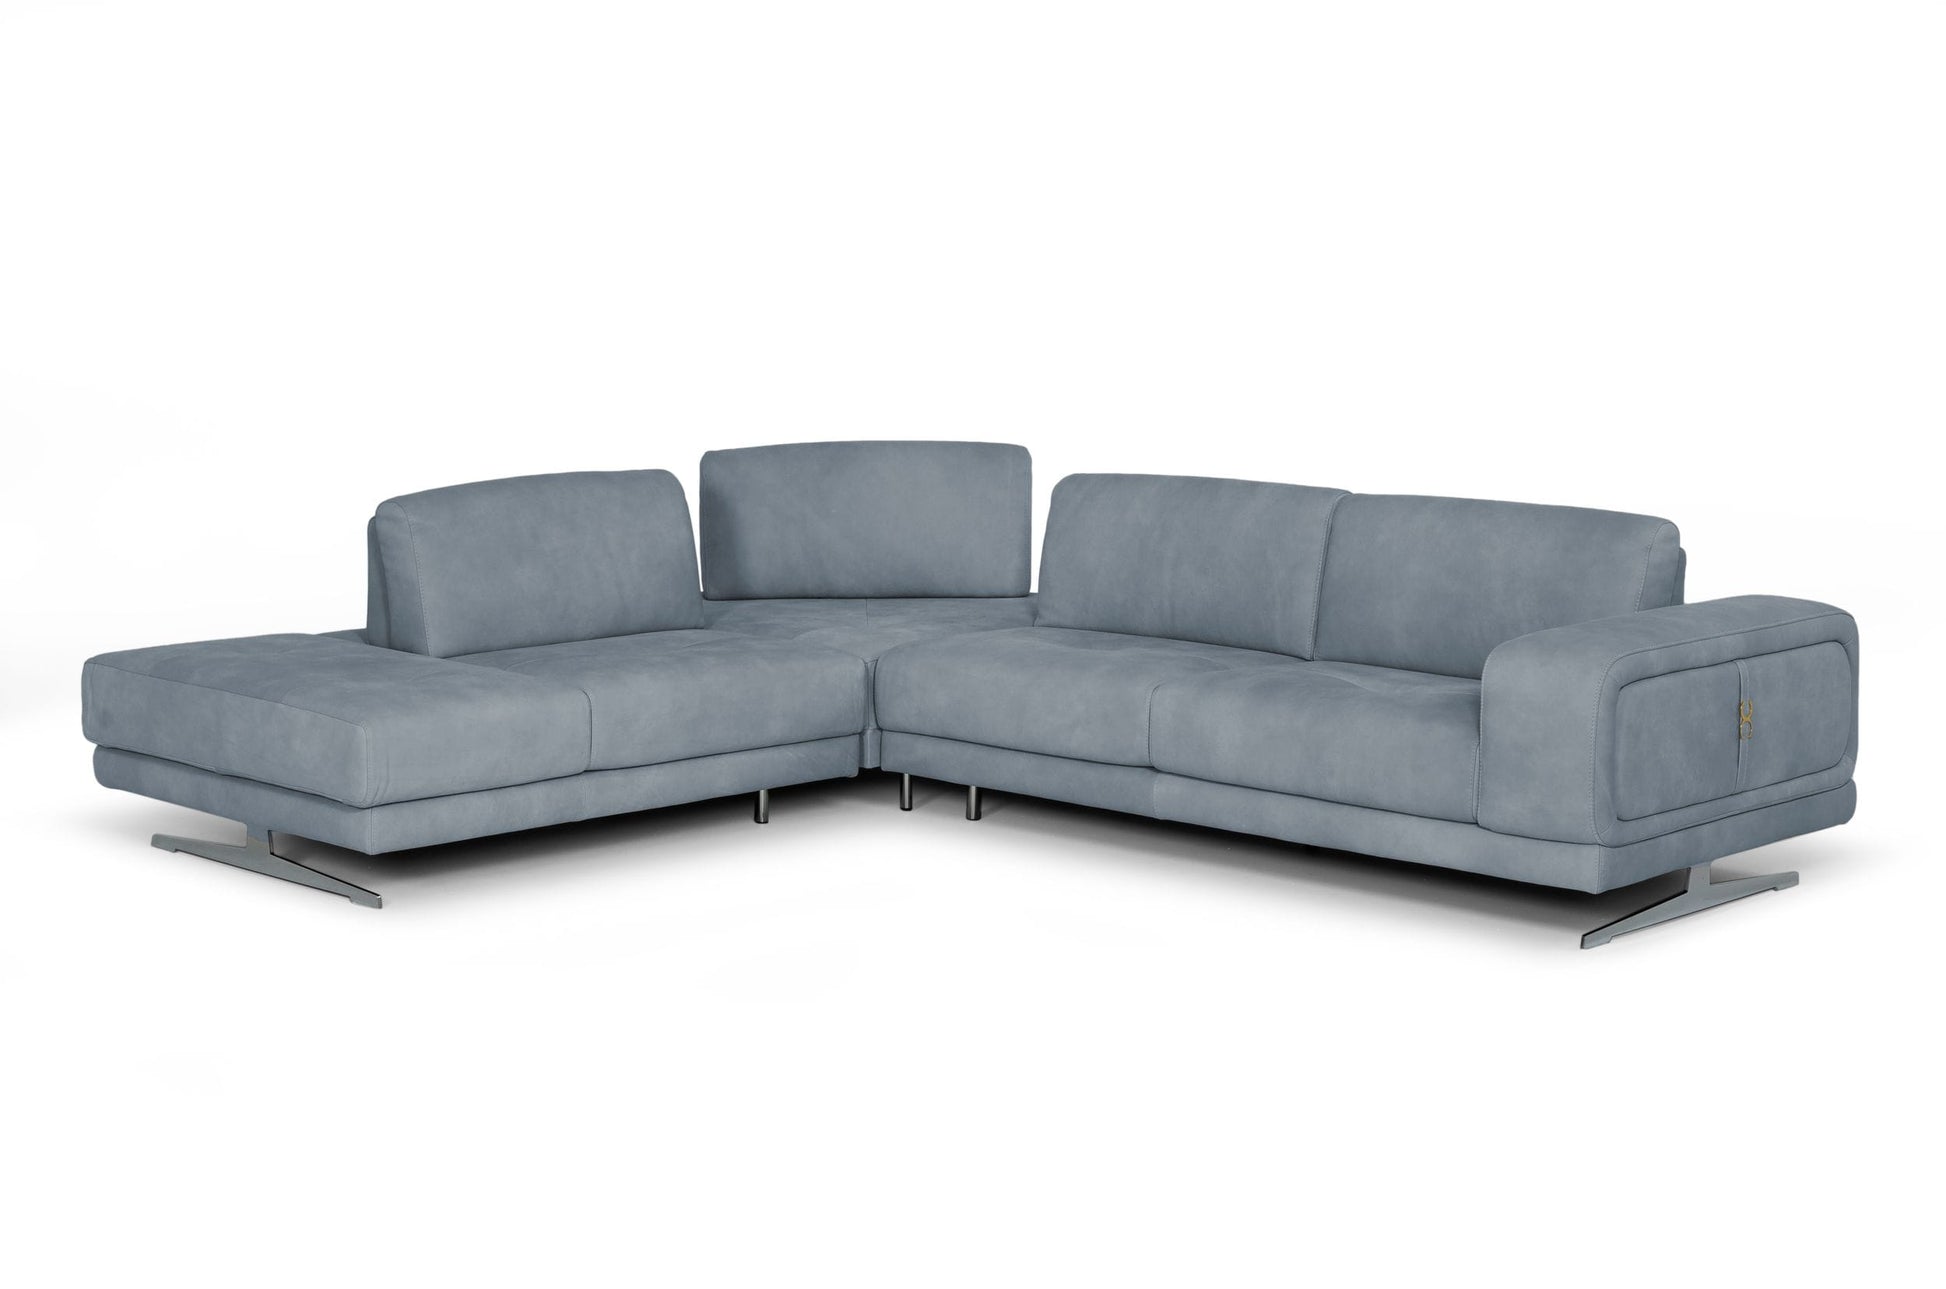 Coronelli Collezioni Mood - Contemporary Blue LAF Chaise Sectional Sofa-3